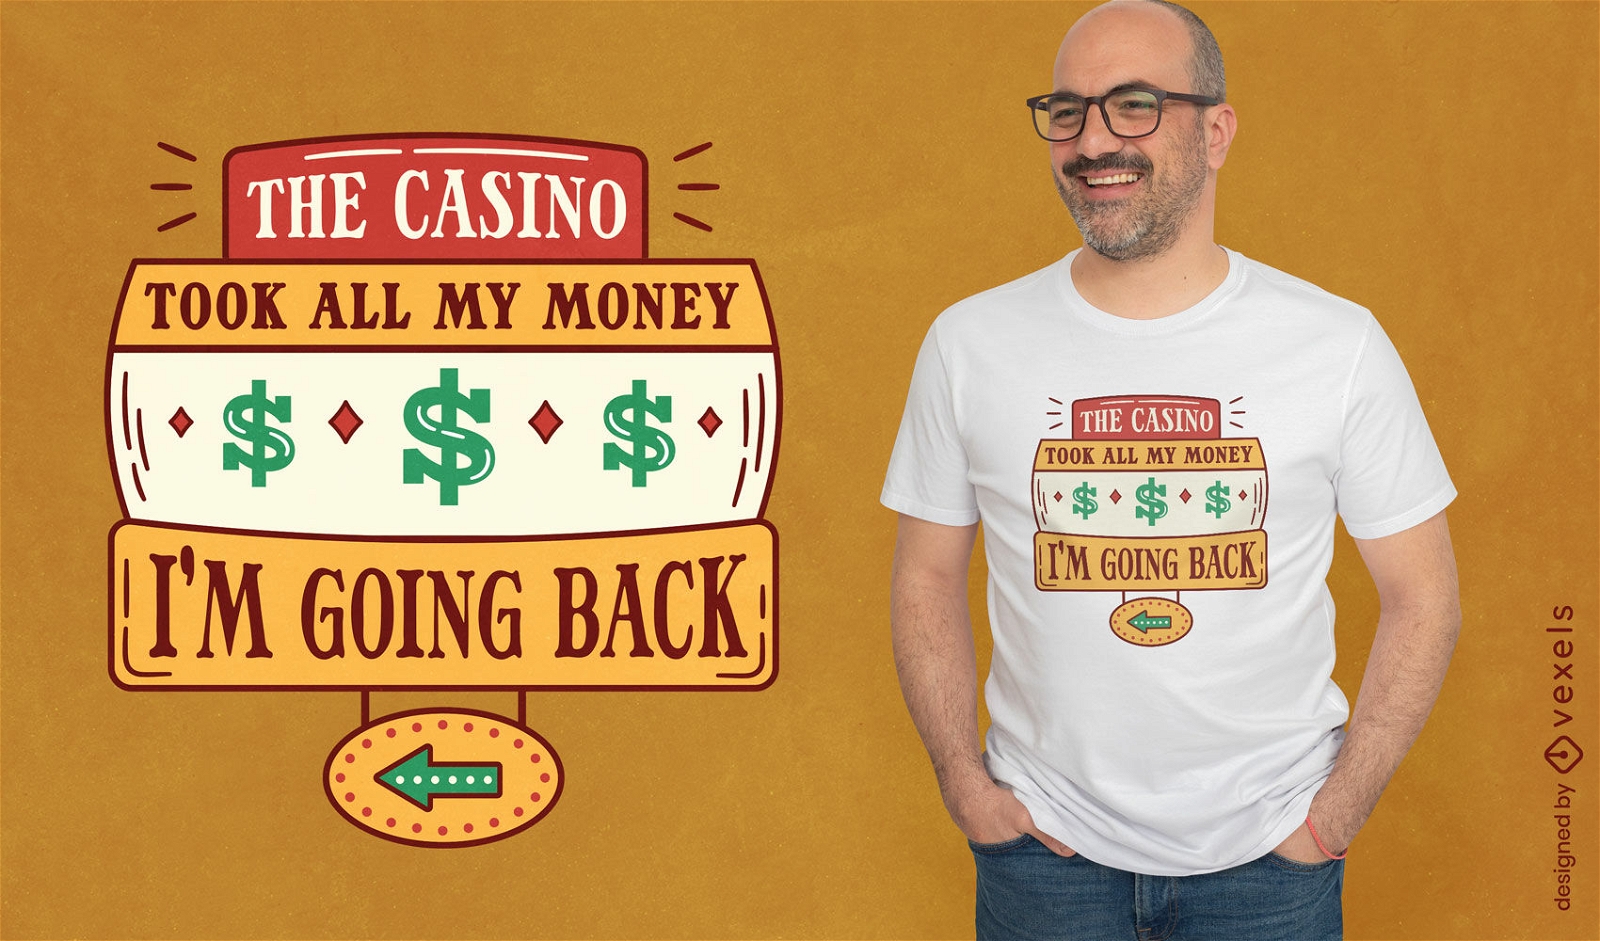 Dise?o de camiseta con declaraci?n de humor de casino.